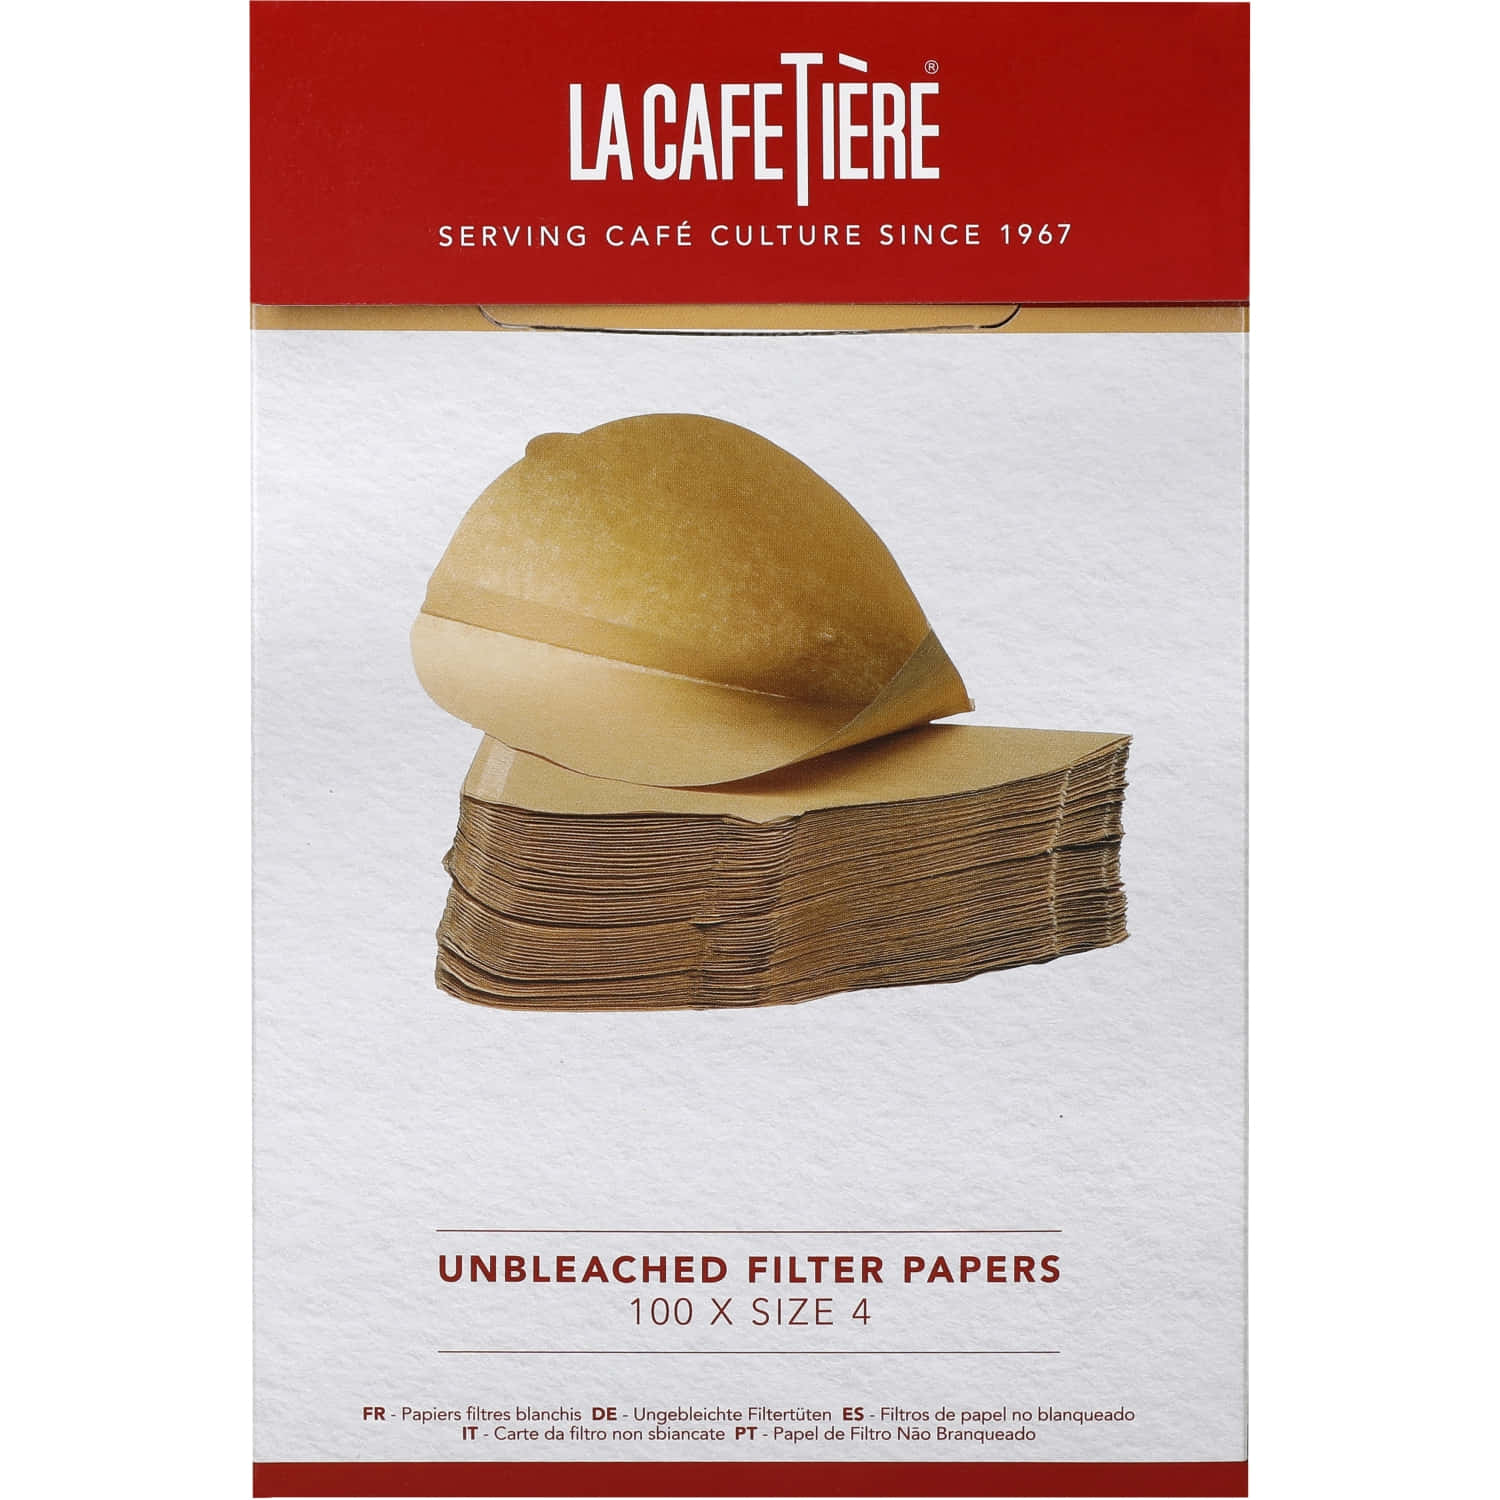 La Cafetière Unbleached Coffee Filter Papers Size 4 100 pieces